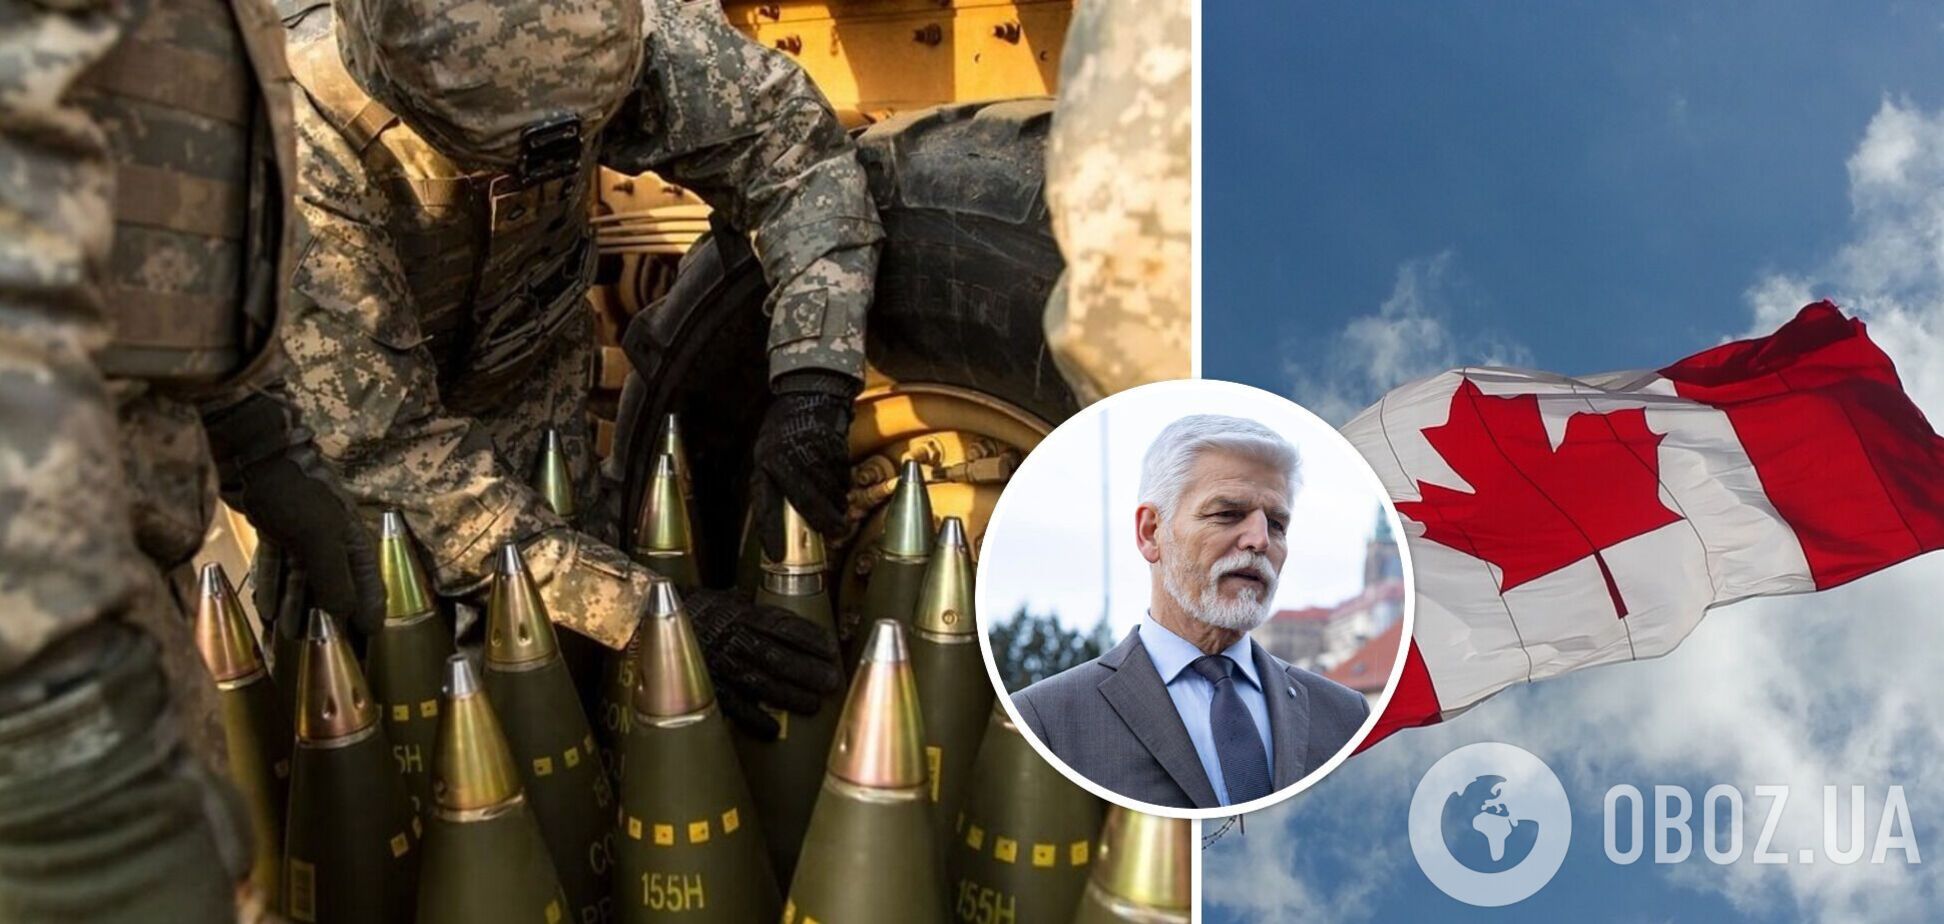 Канада готова оплатить доставку 800 тысяч снарядов, найденных Чехией для Украины – CBC News